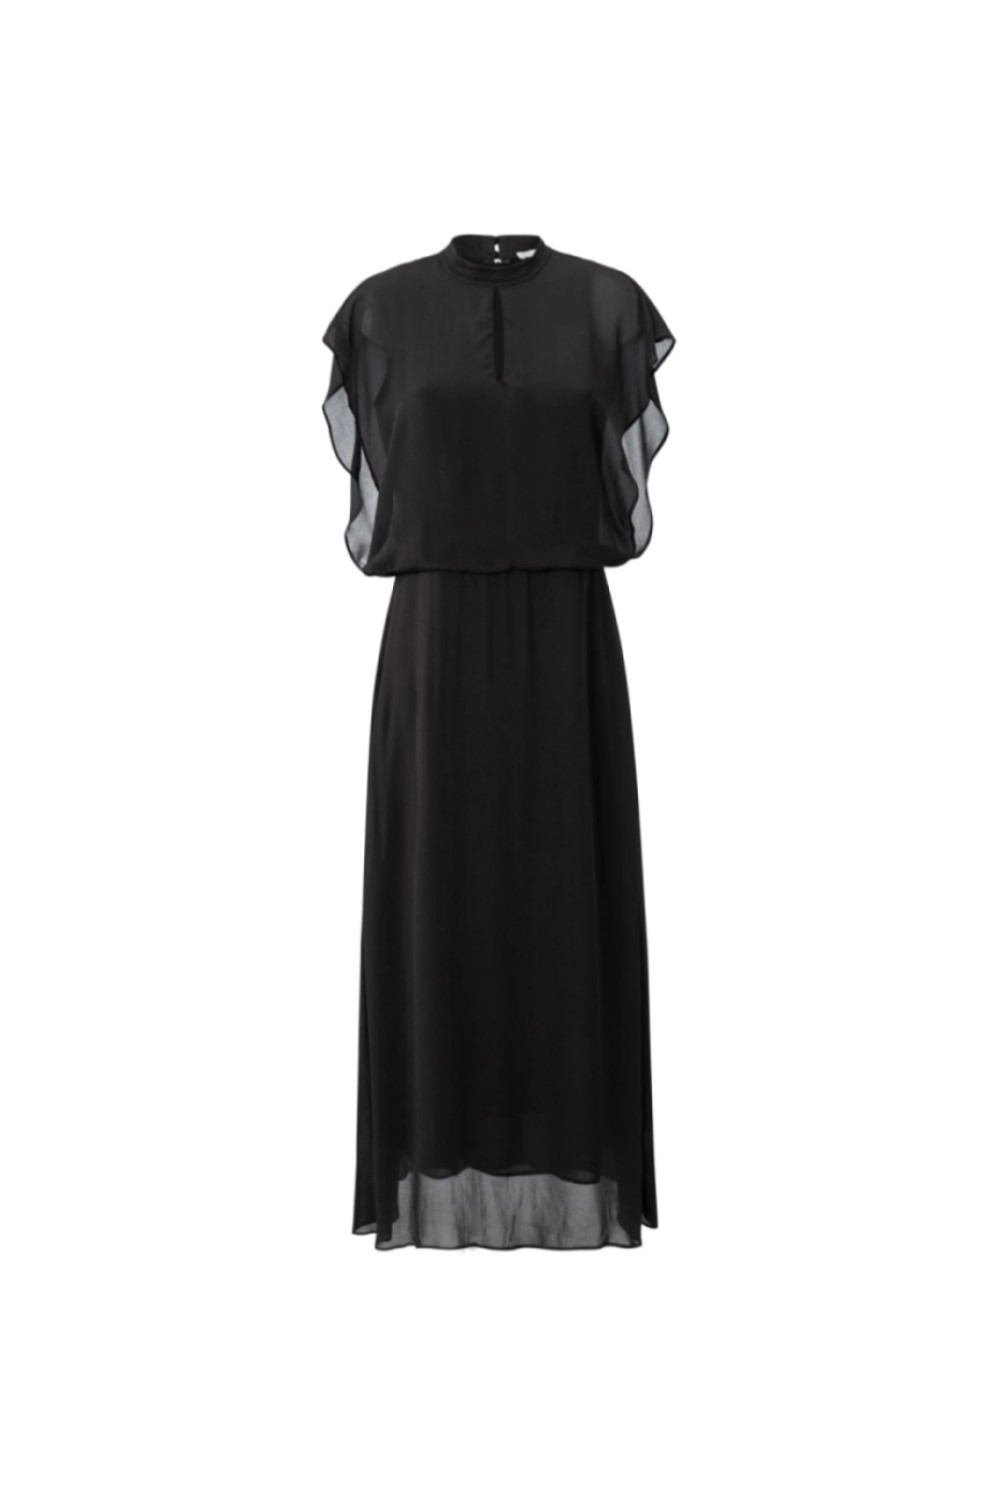 YAYA : Flowy Dress with Cap Sleeves - jojo Boutique